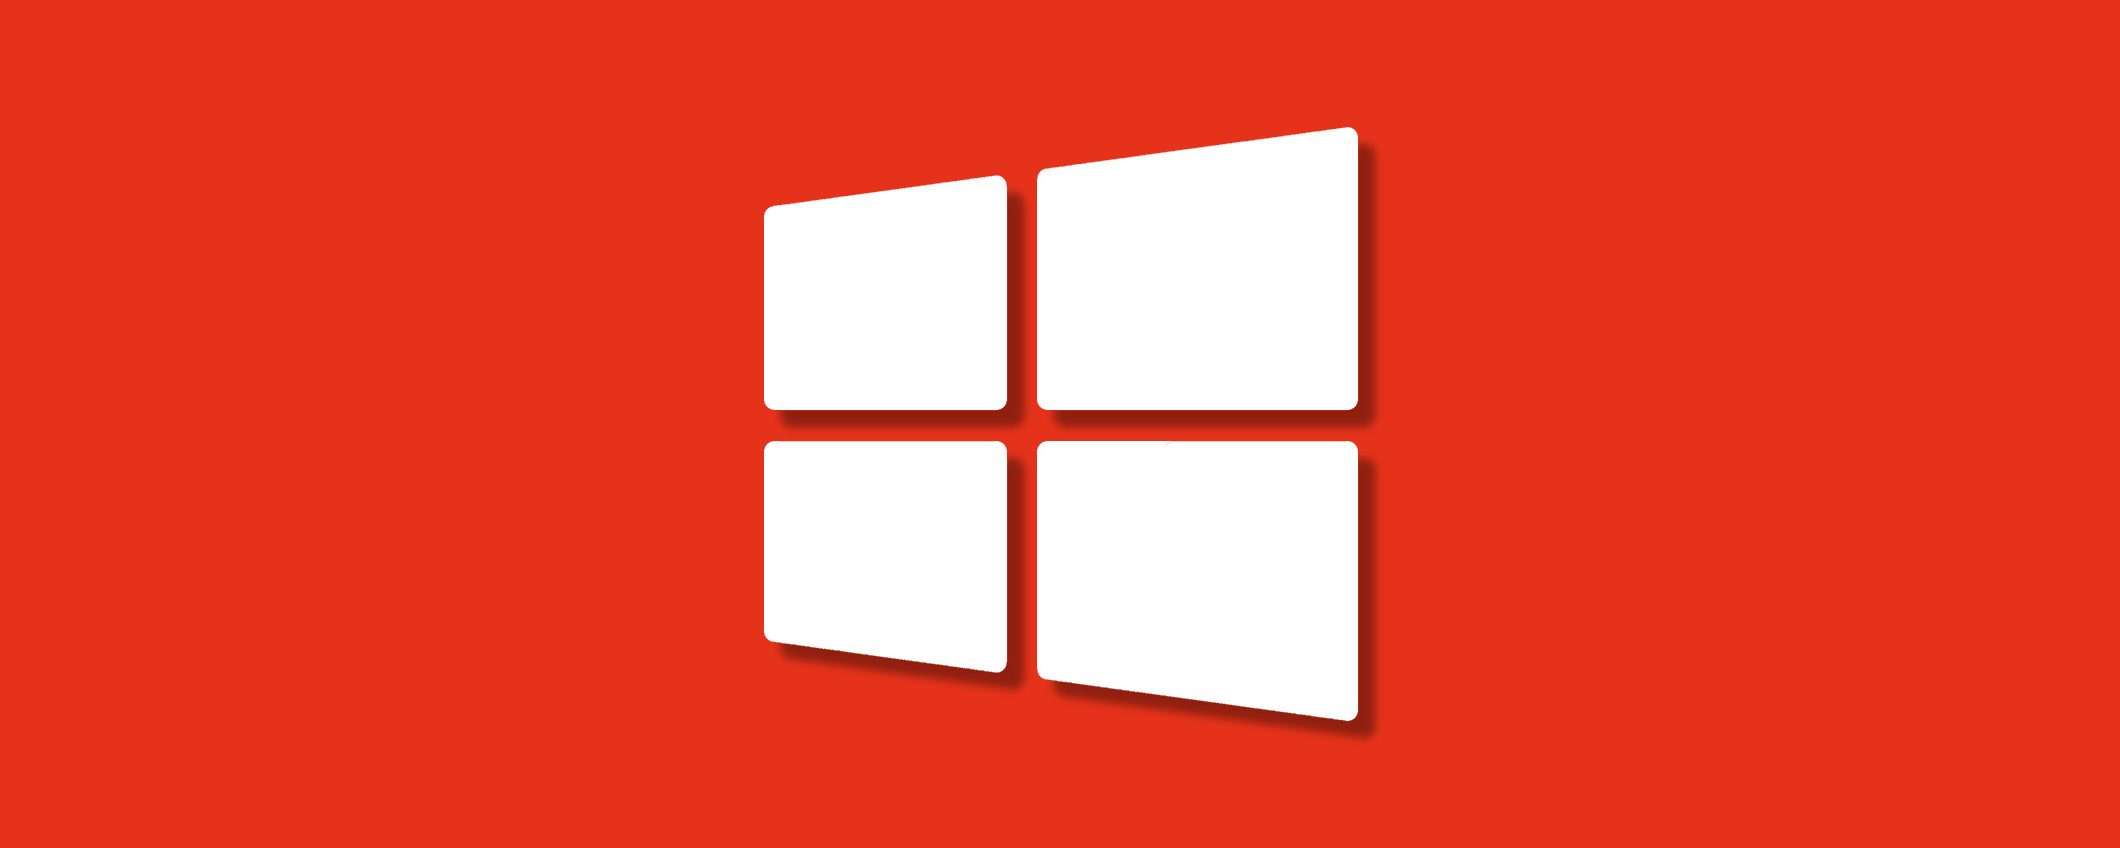 Sconti di Pasqua: licenze Windows 10 Pro e Office, supersconti del 91% ora!